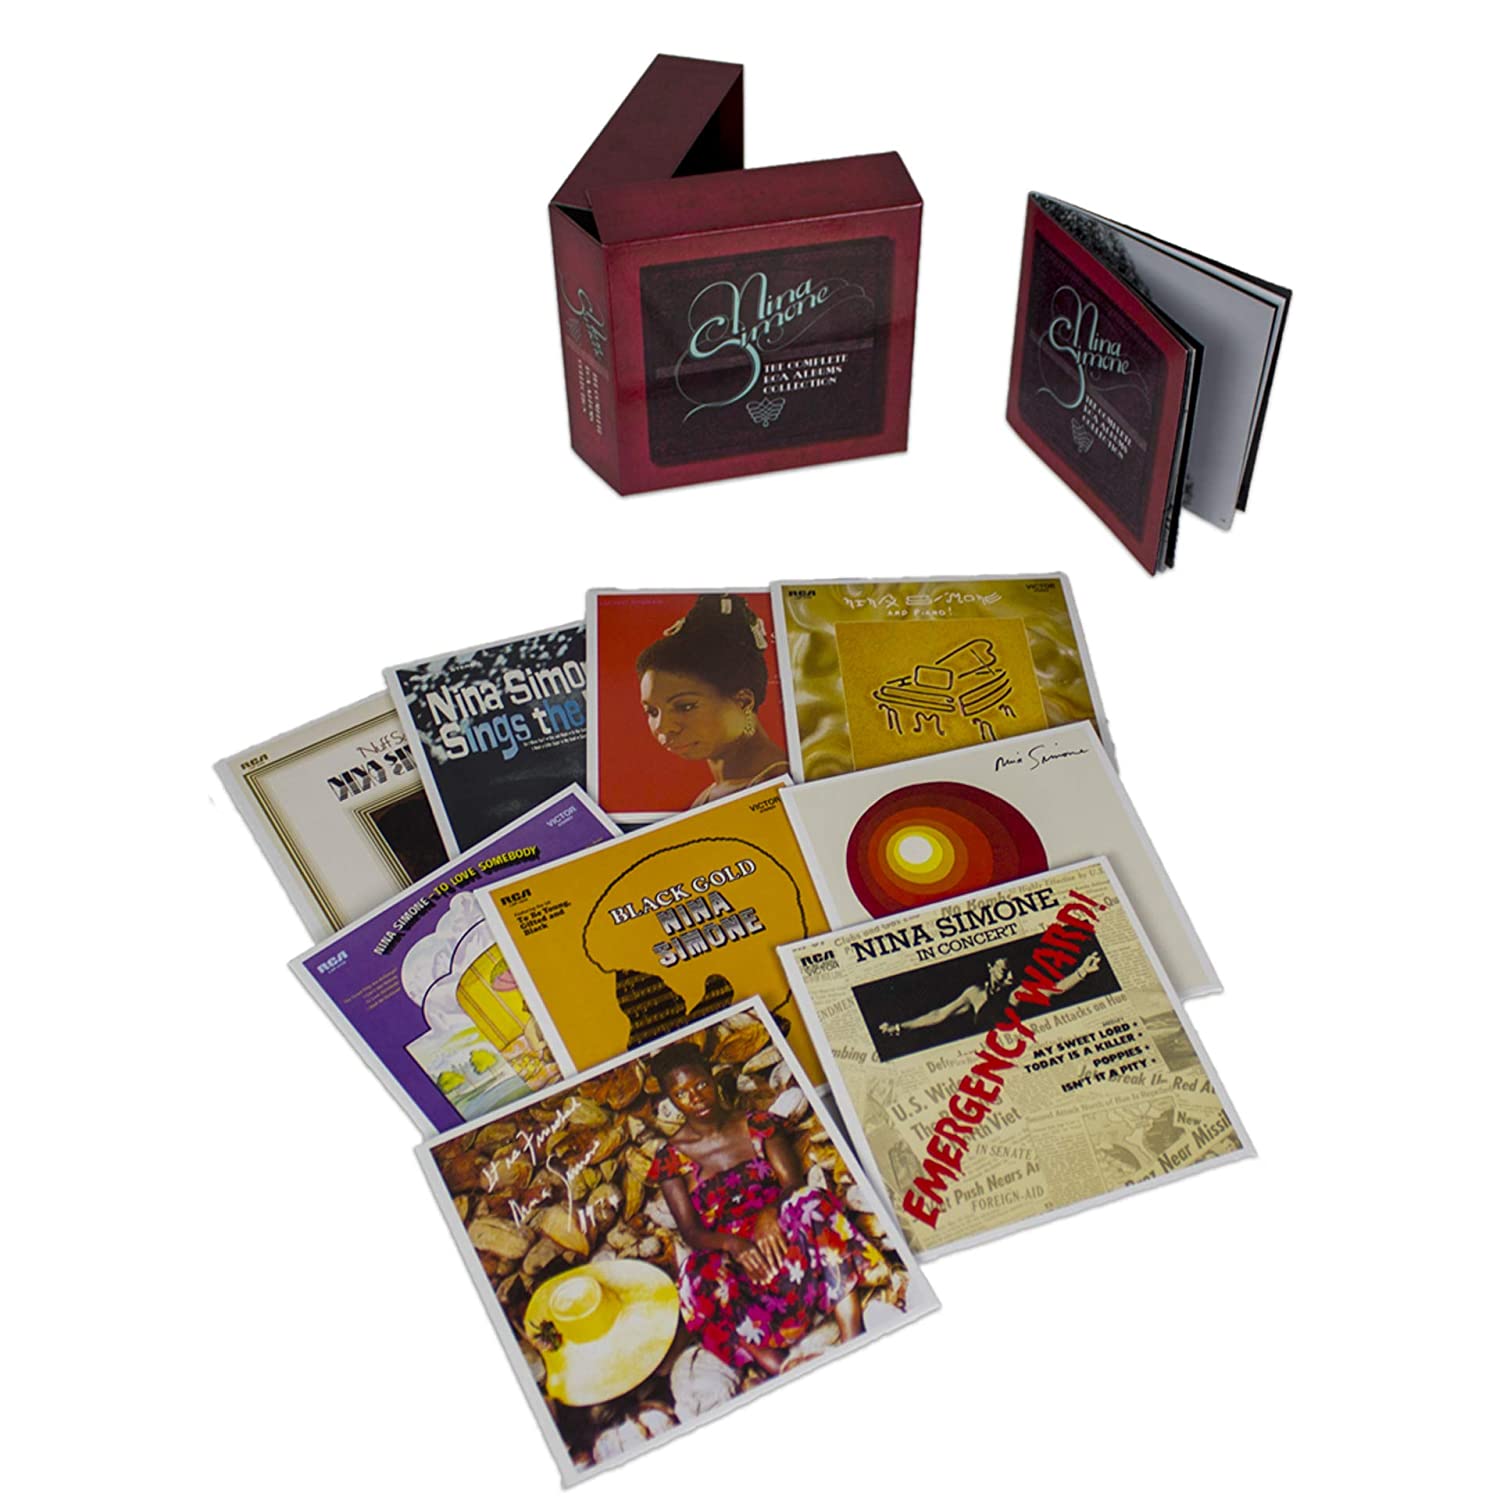 Nina Simone (니나 시몬) - The Complete RCA Albums Collection 